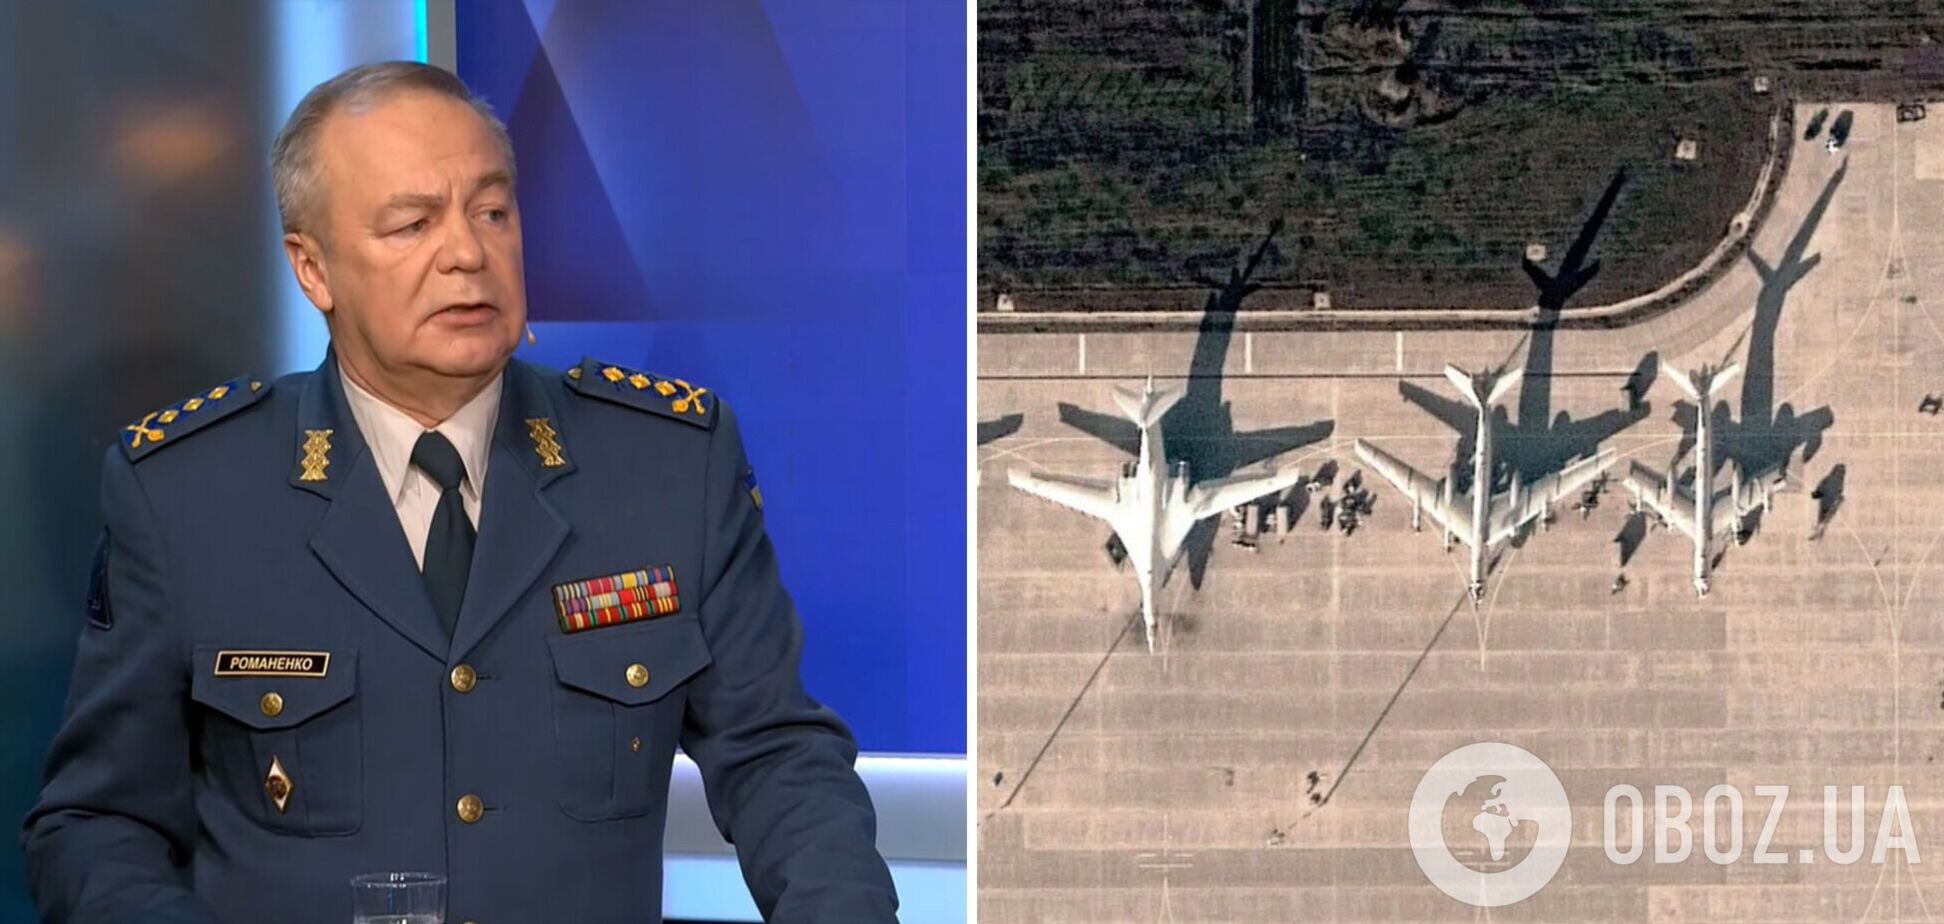 'Это абсолютно законные действия': генерал Романенко рассказал об эффективности 'бавовн' на аэродромах РФ и поддержке союзников